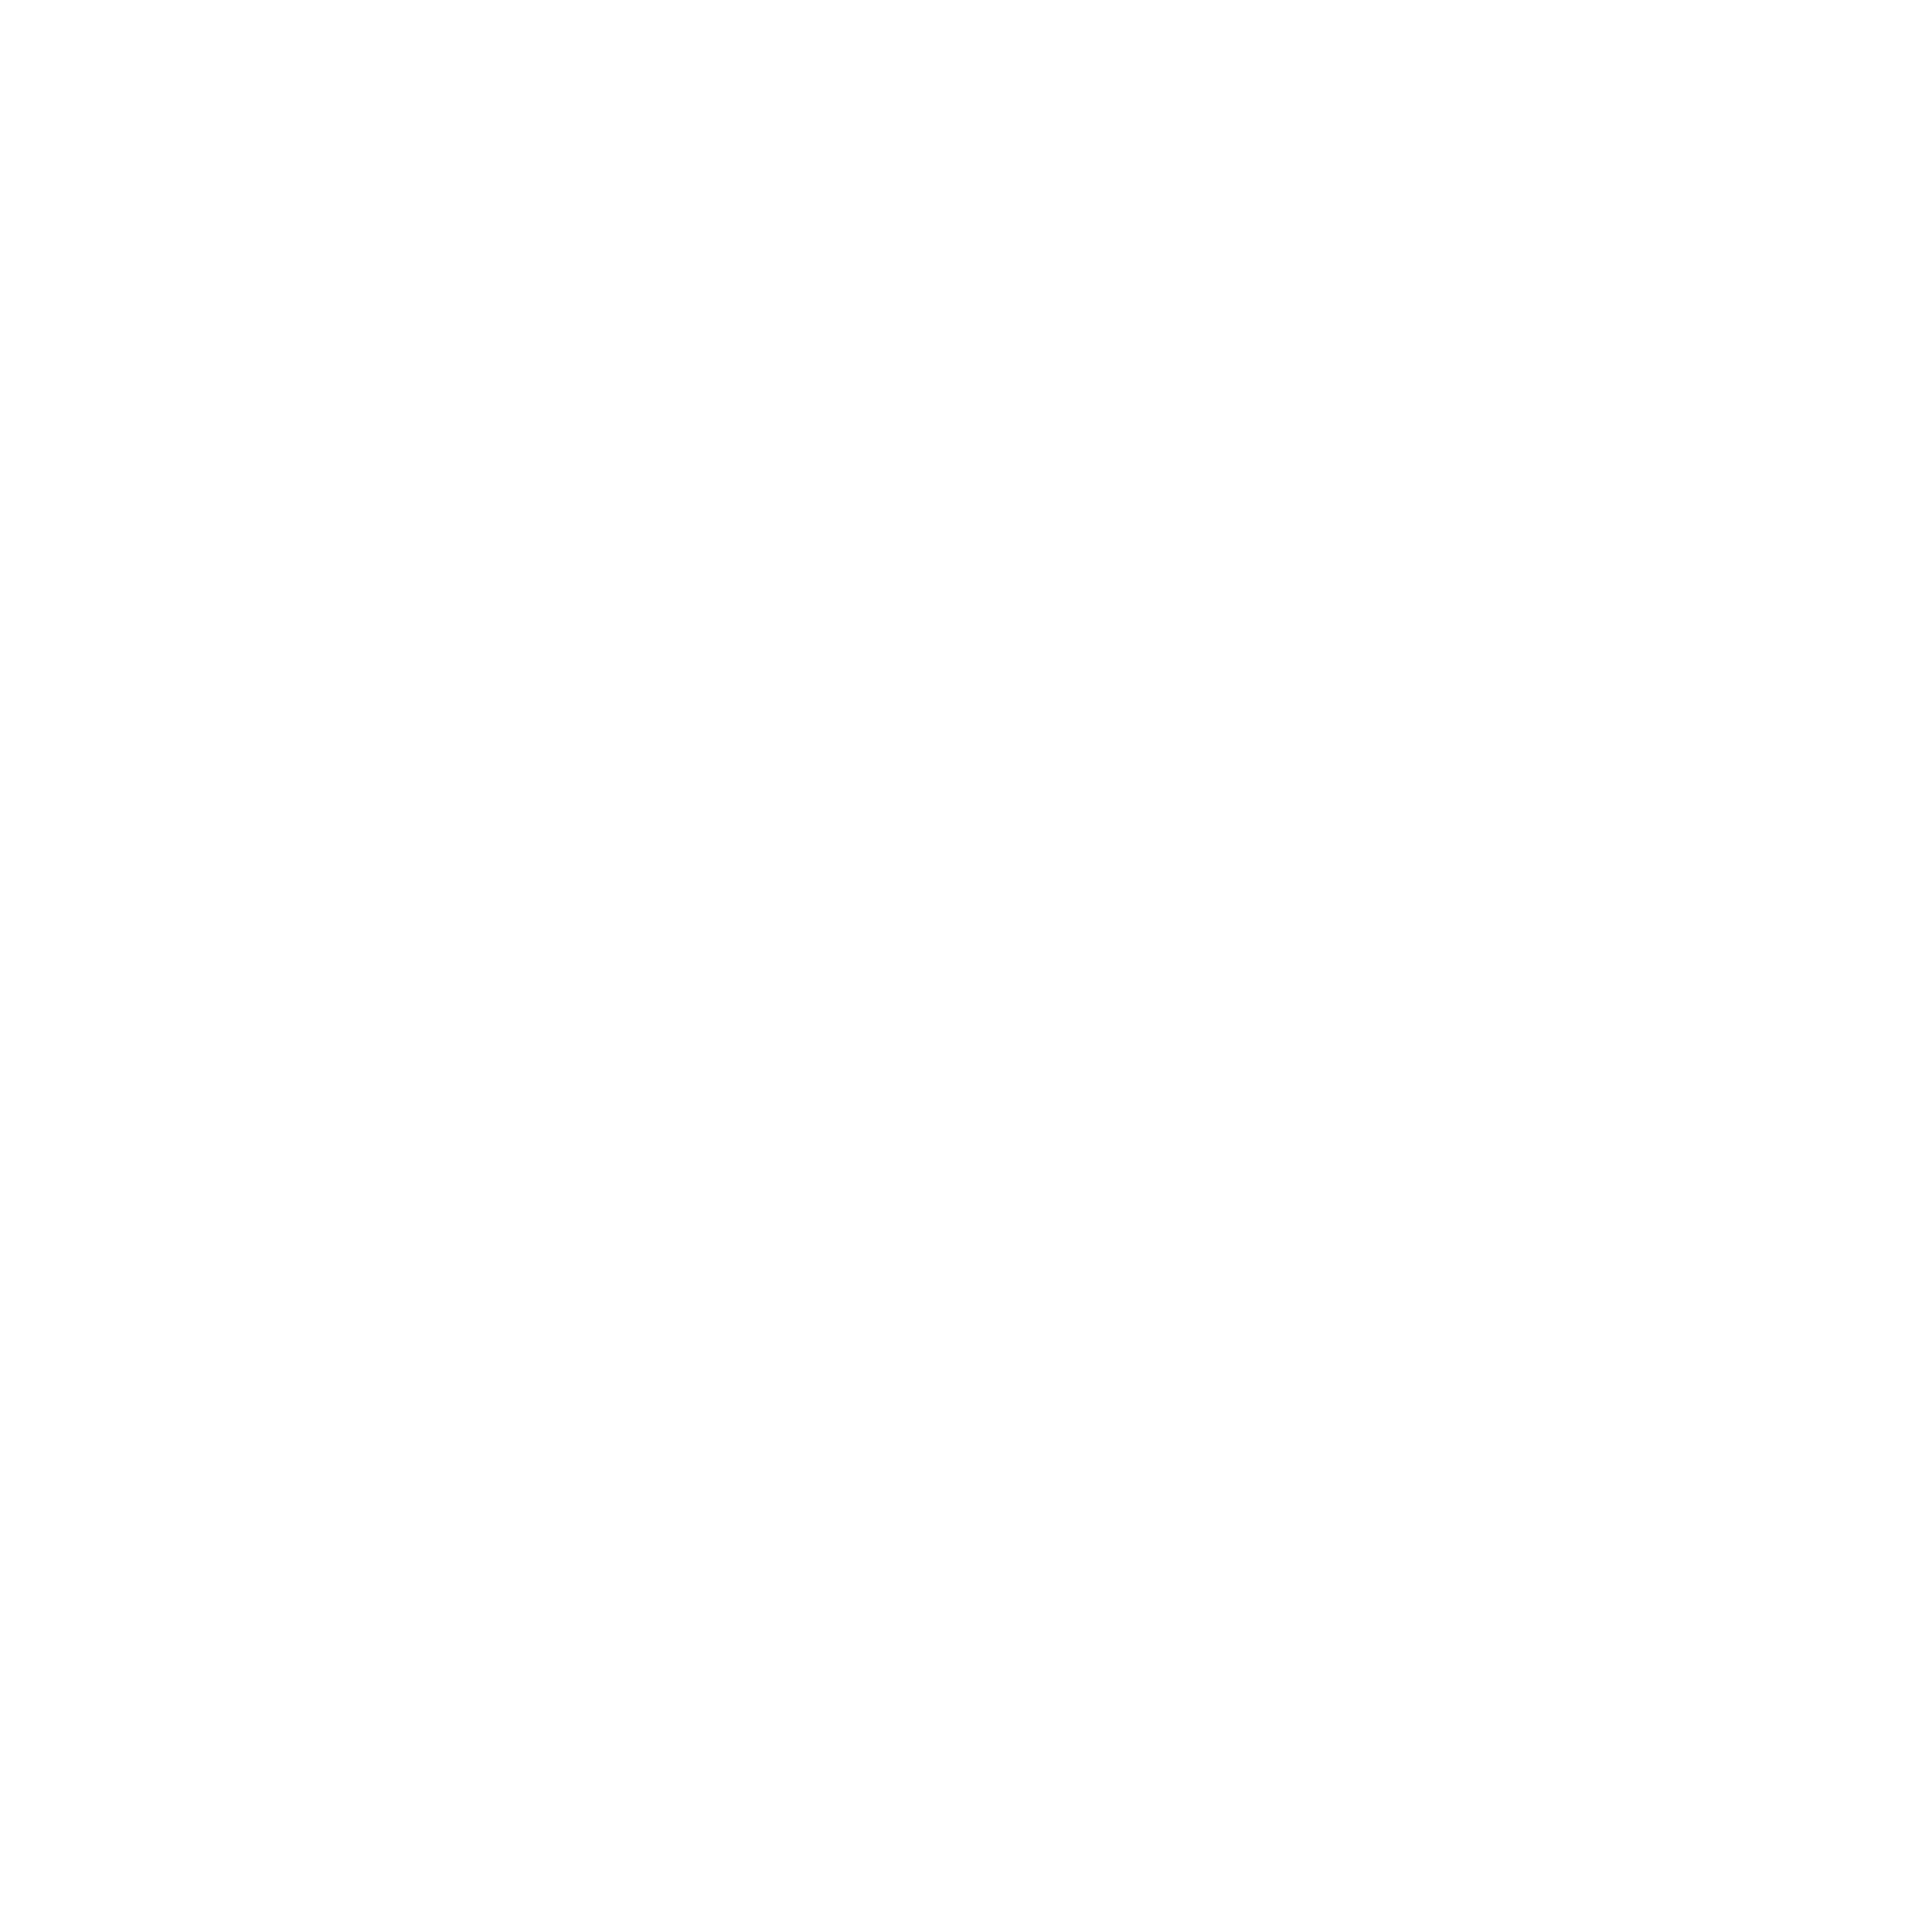 Injaz Company